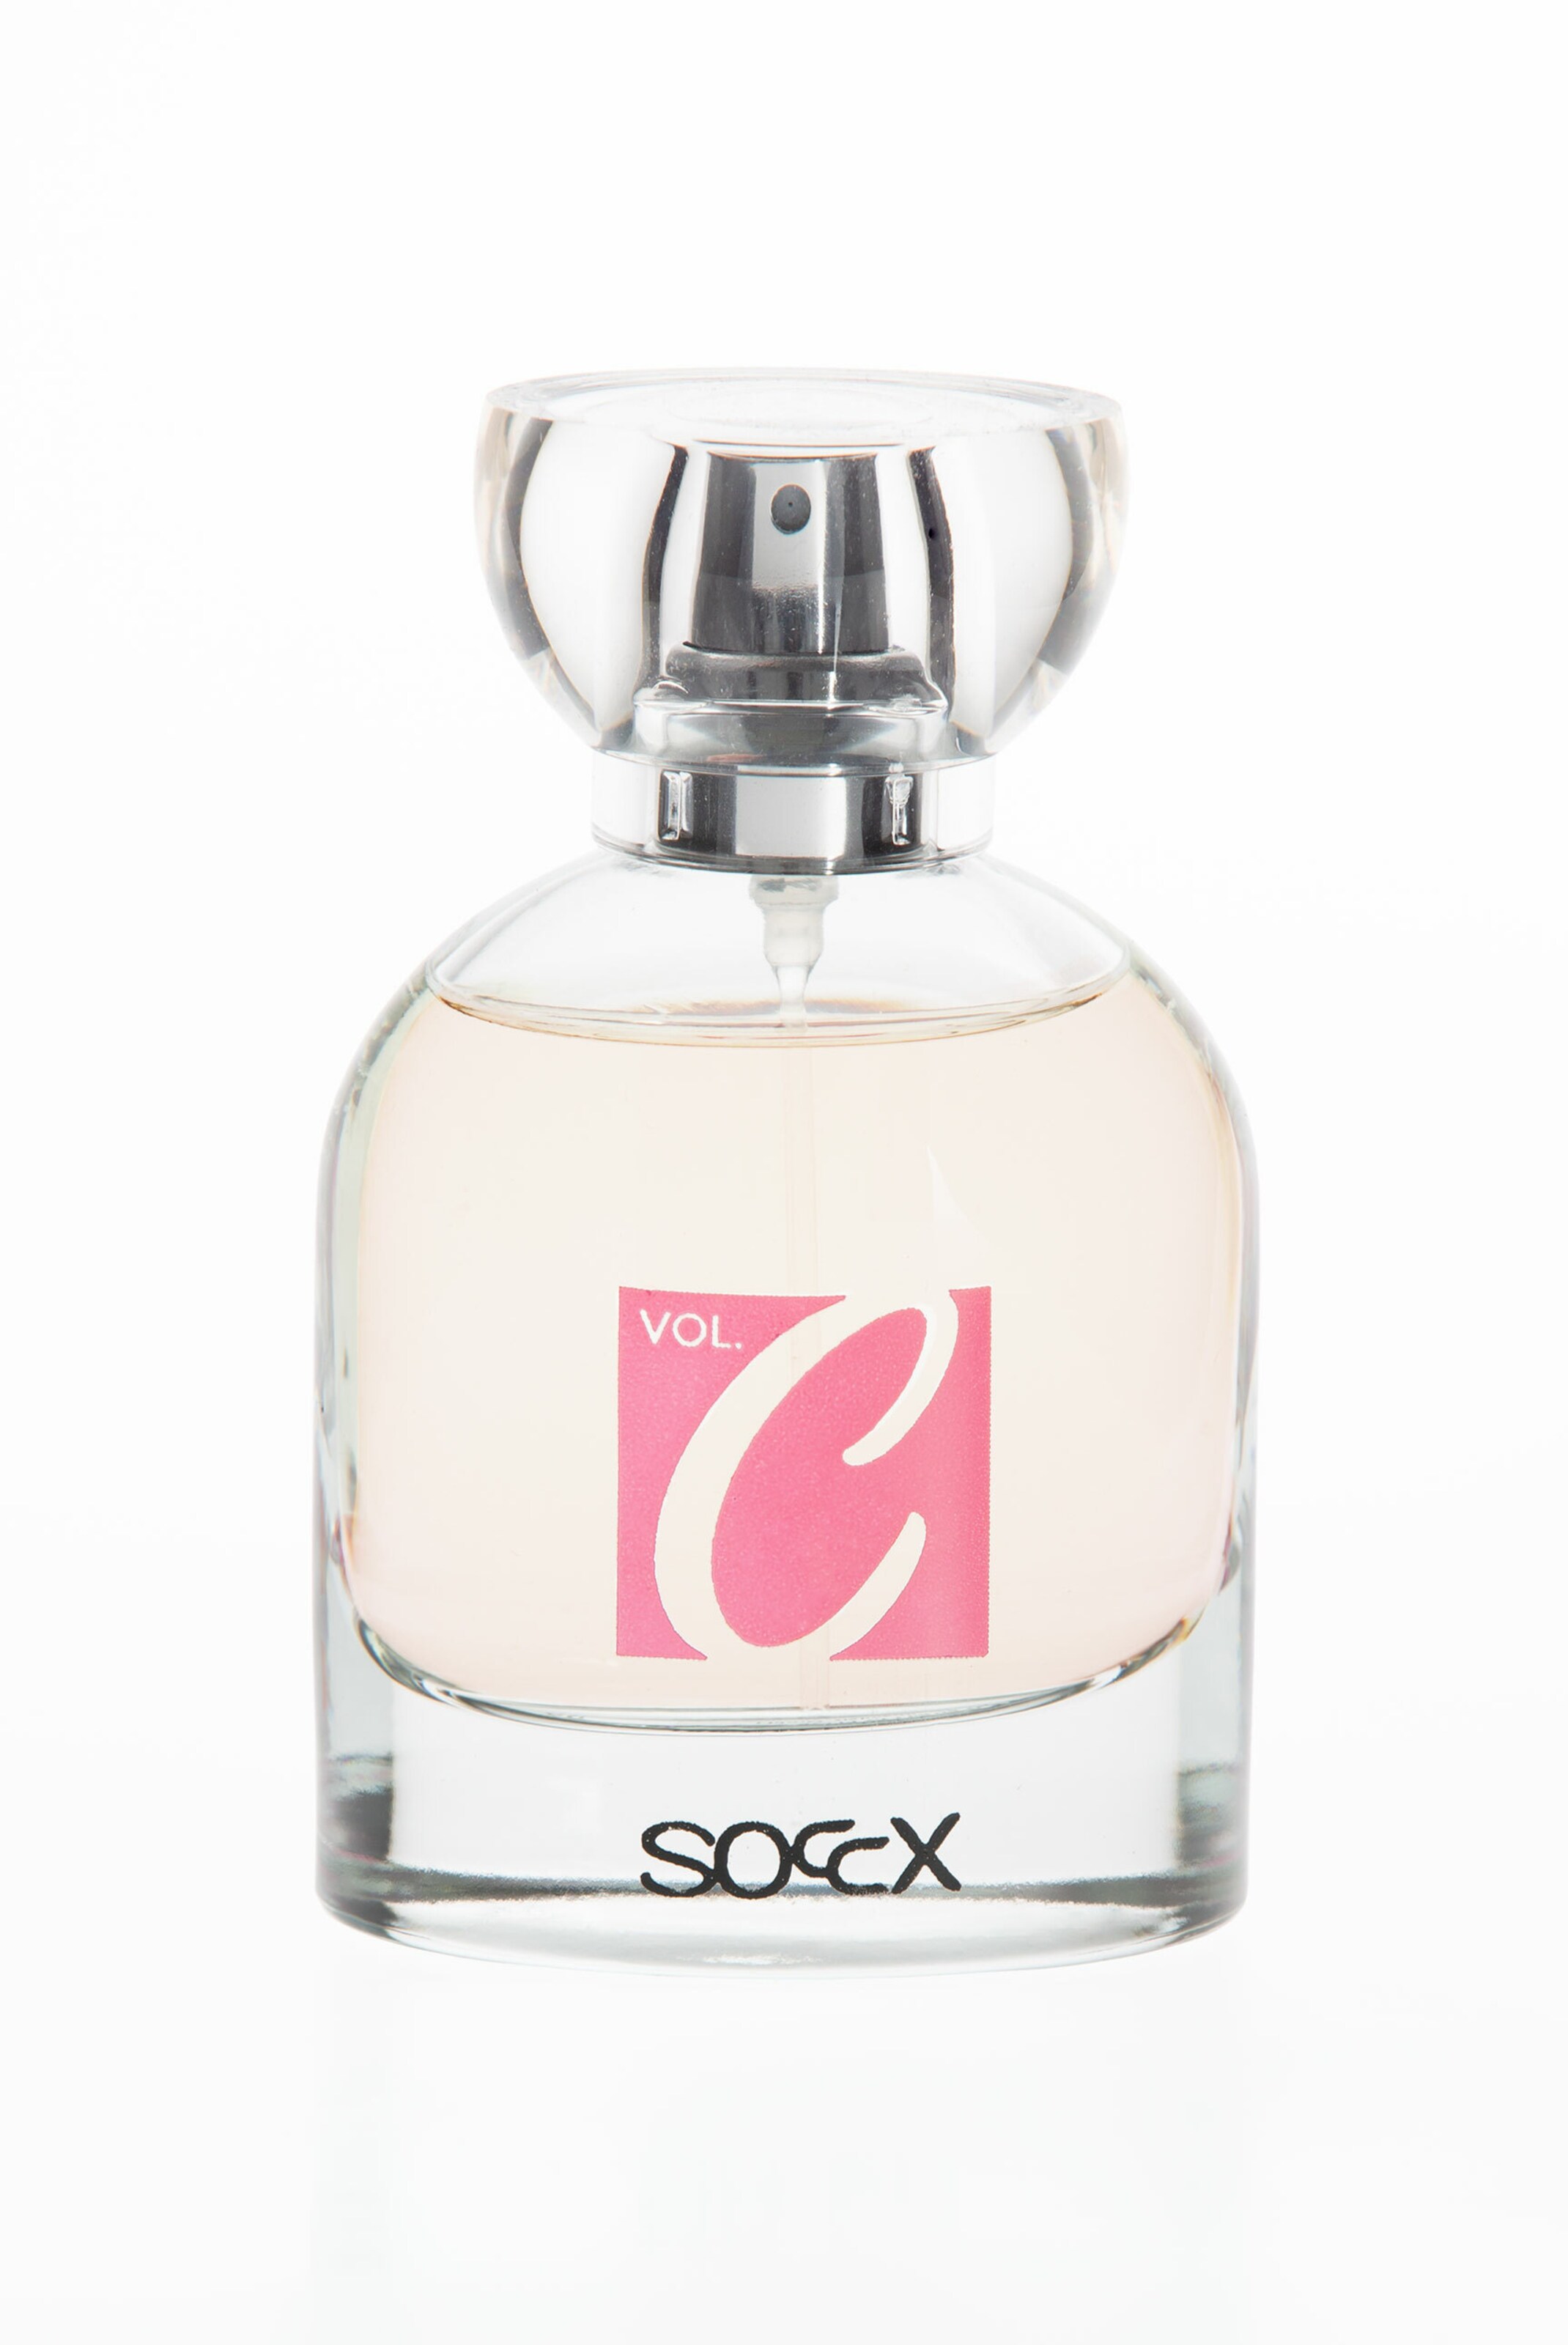 Soccx SOCCX Vol.C, Eau de Parfum, 50 ml in 